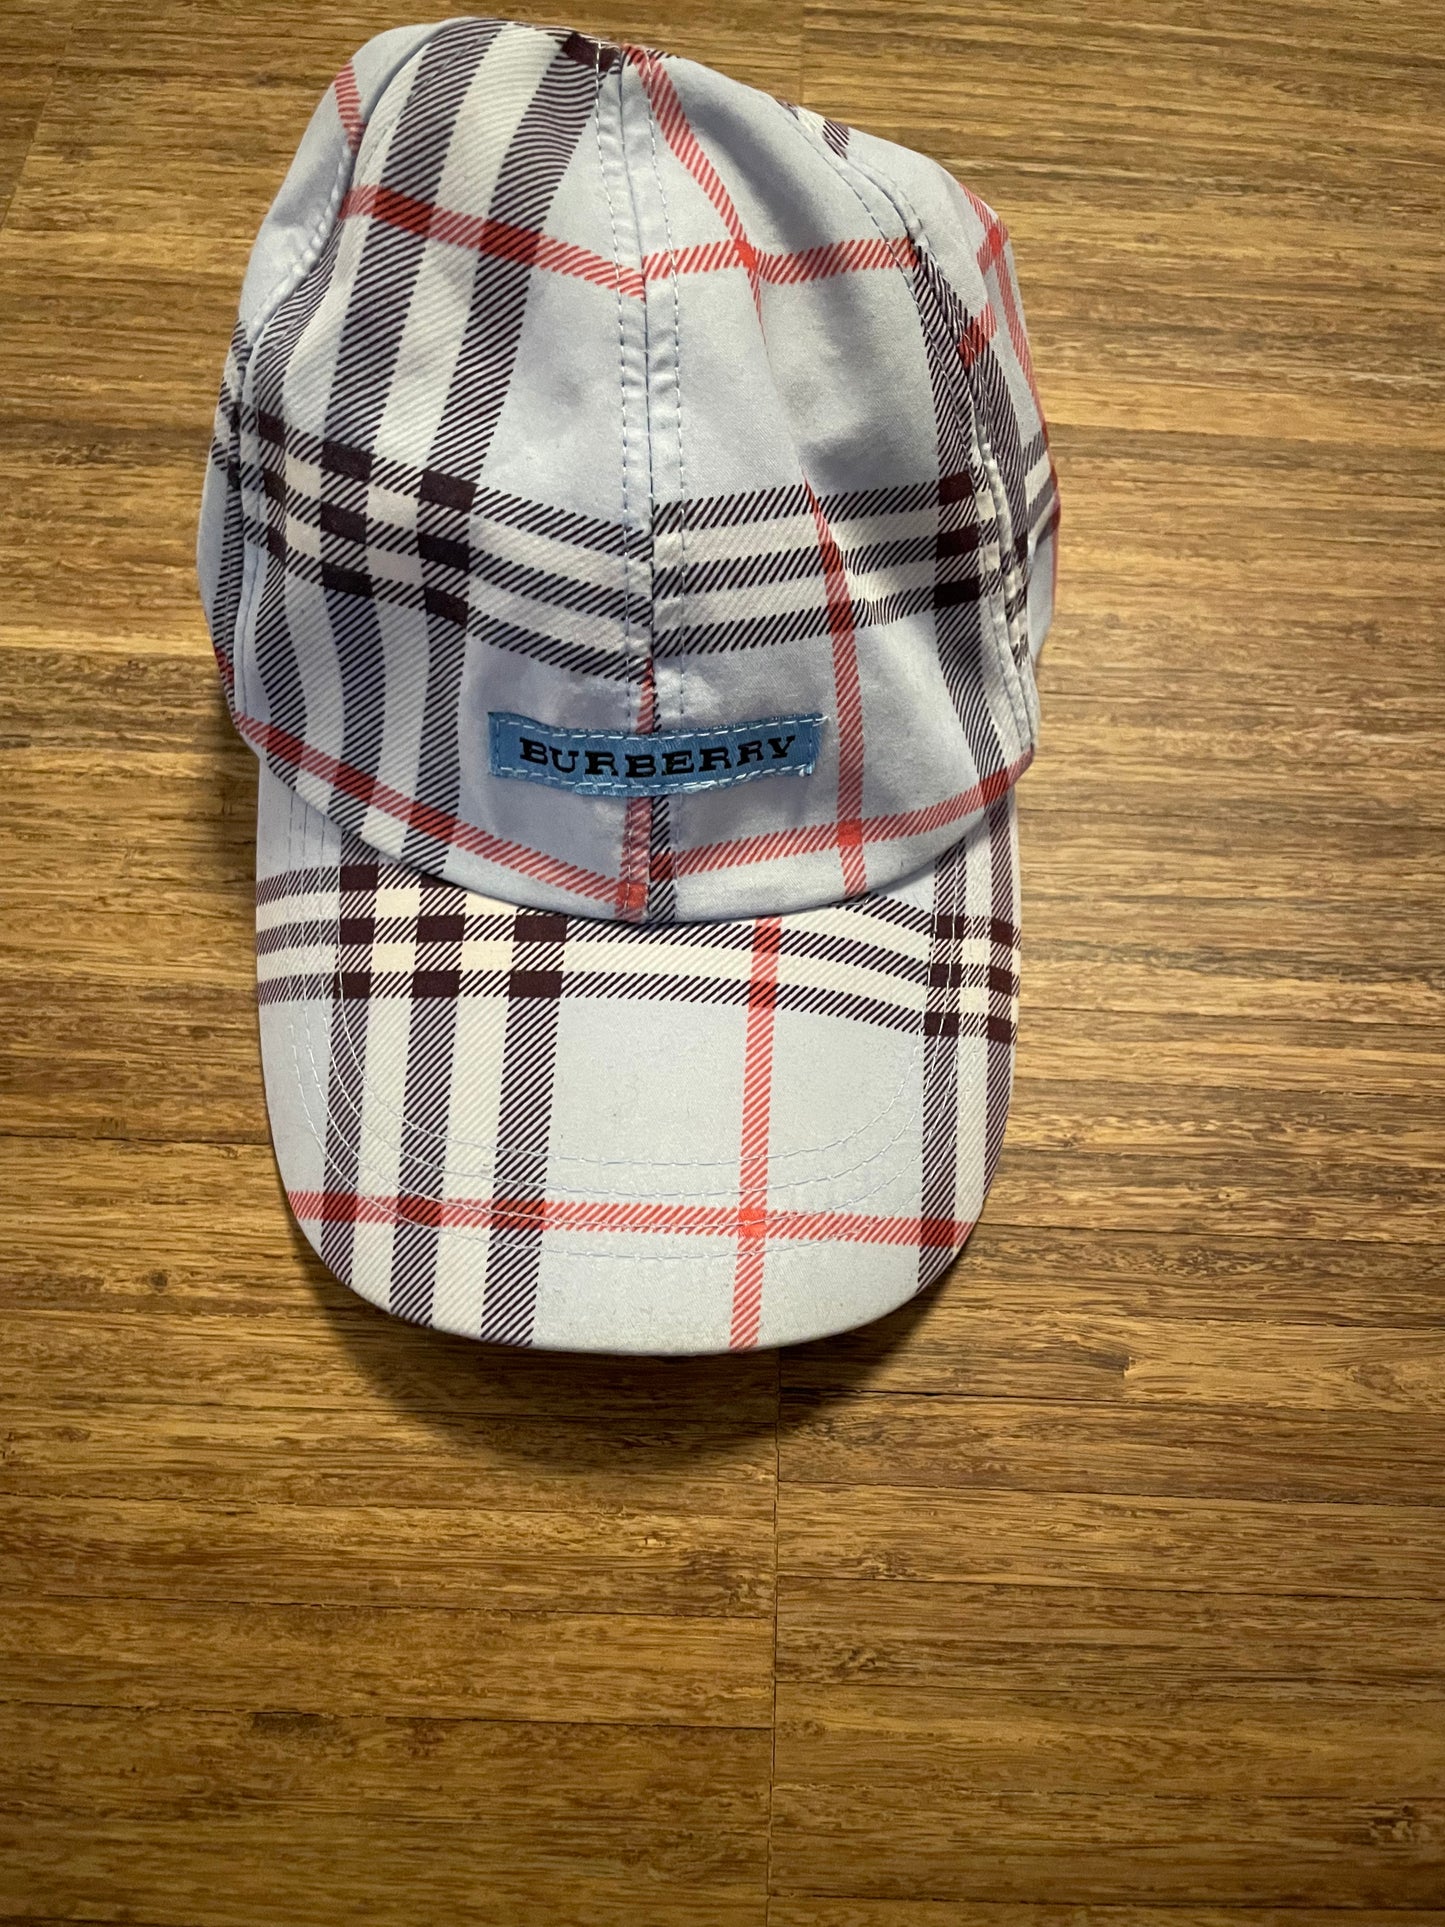 Rare Burberry Cap